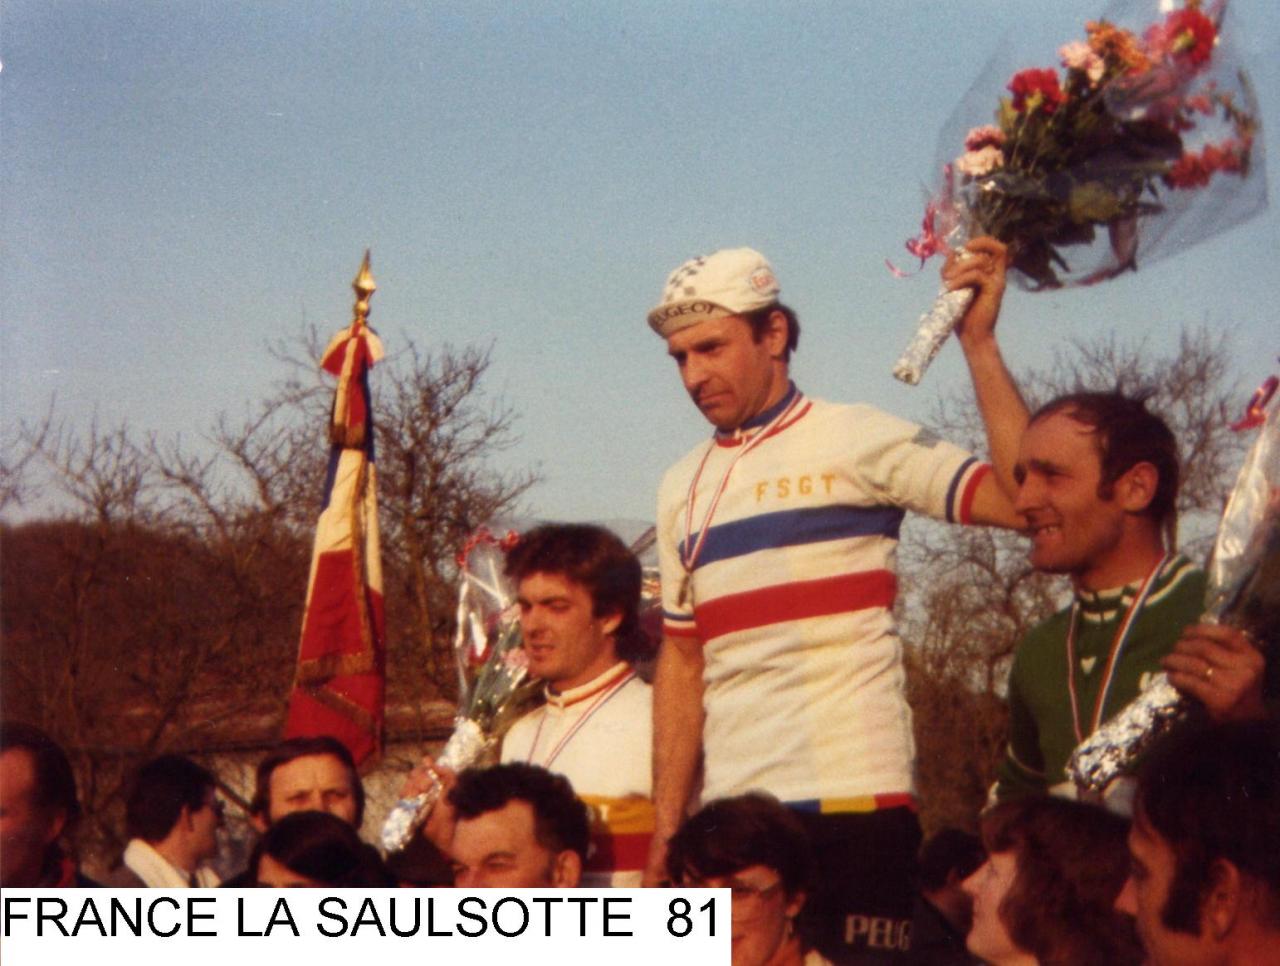 3ème FRANCE CYCLO CROSS 1981